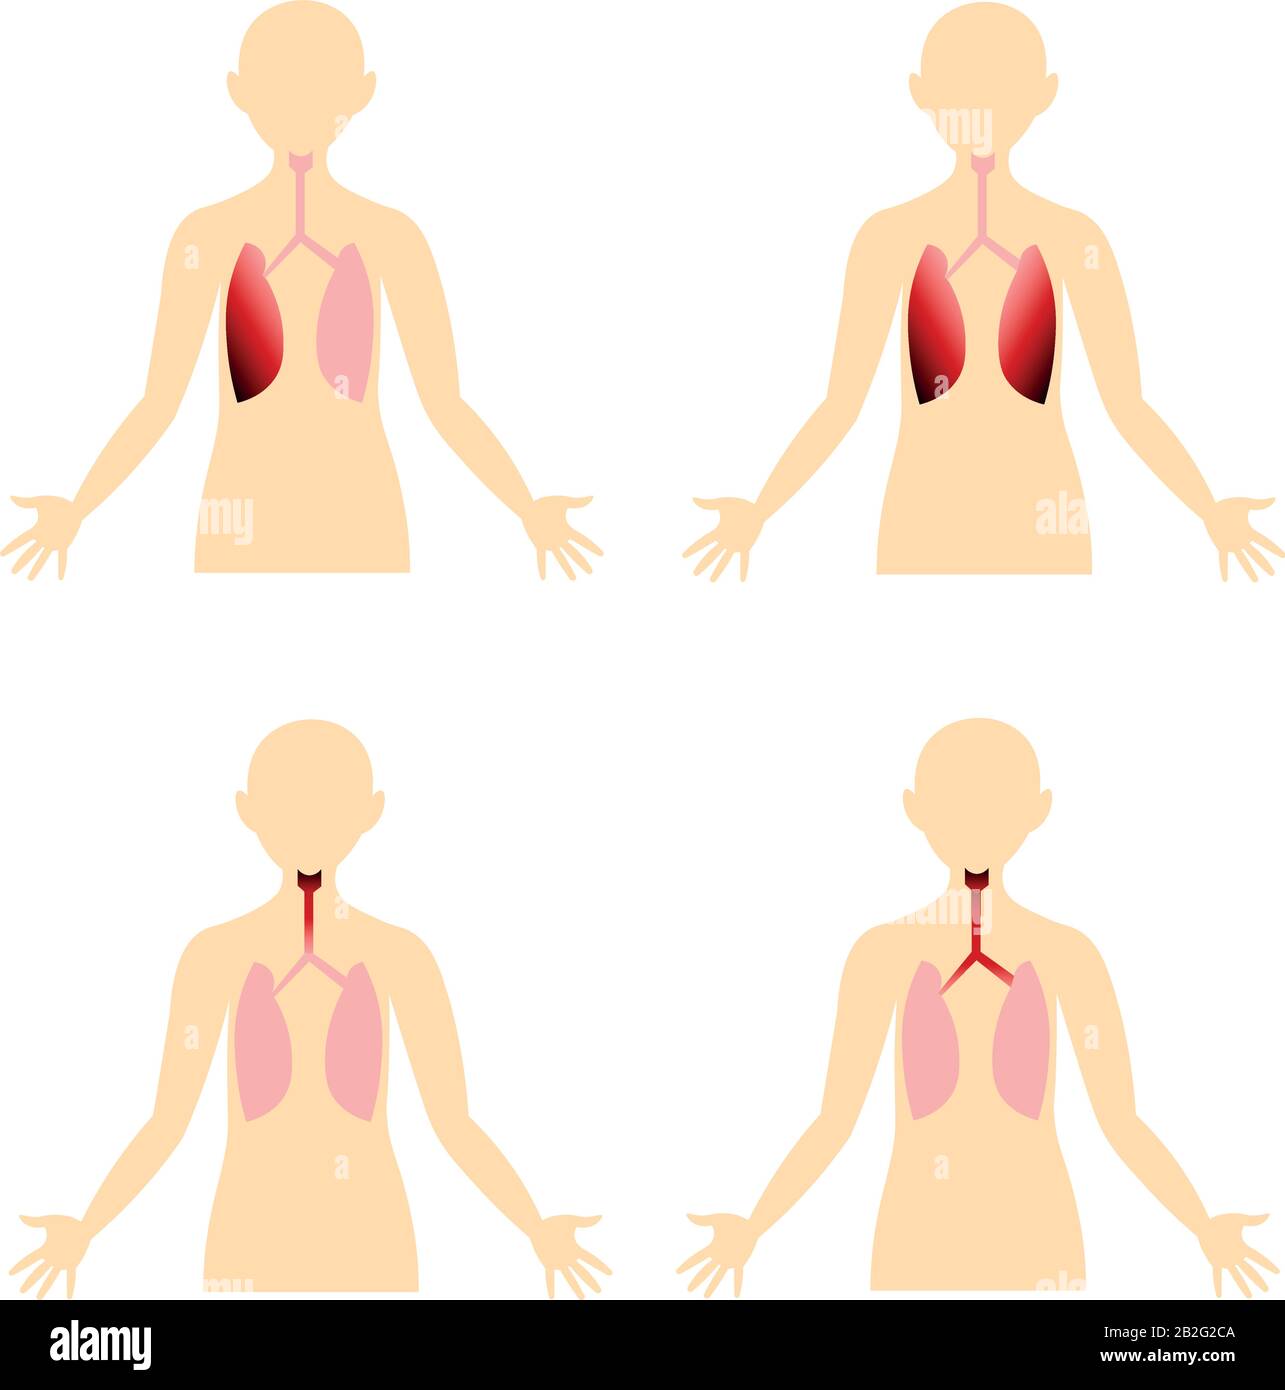 Maladies du système respiratoire. Organes du corps humain. Image anatomique. Pneumonie, bronchite. Illustration de Vecteur